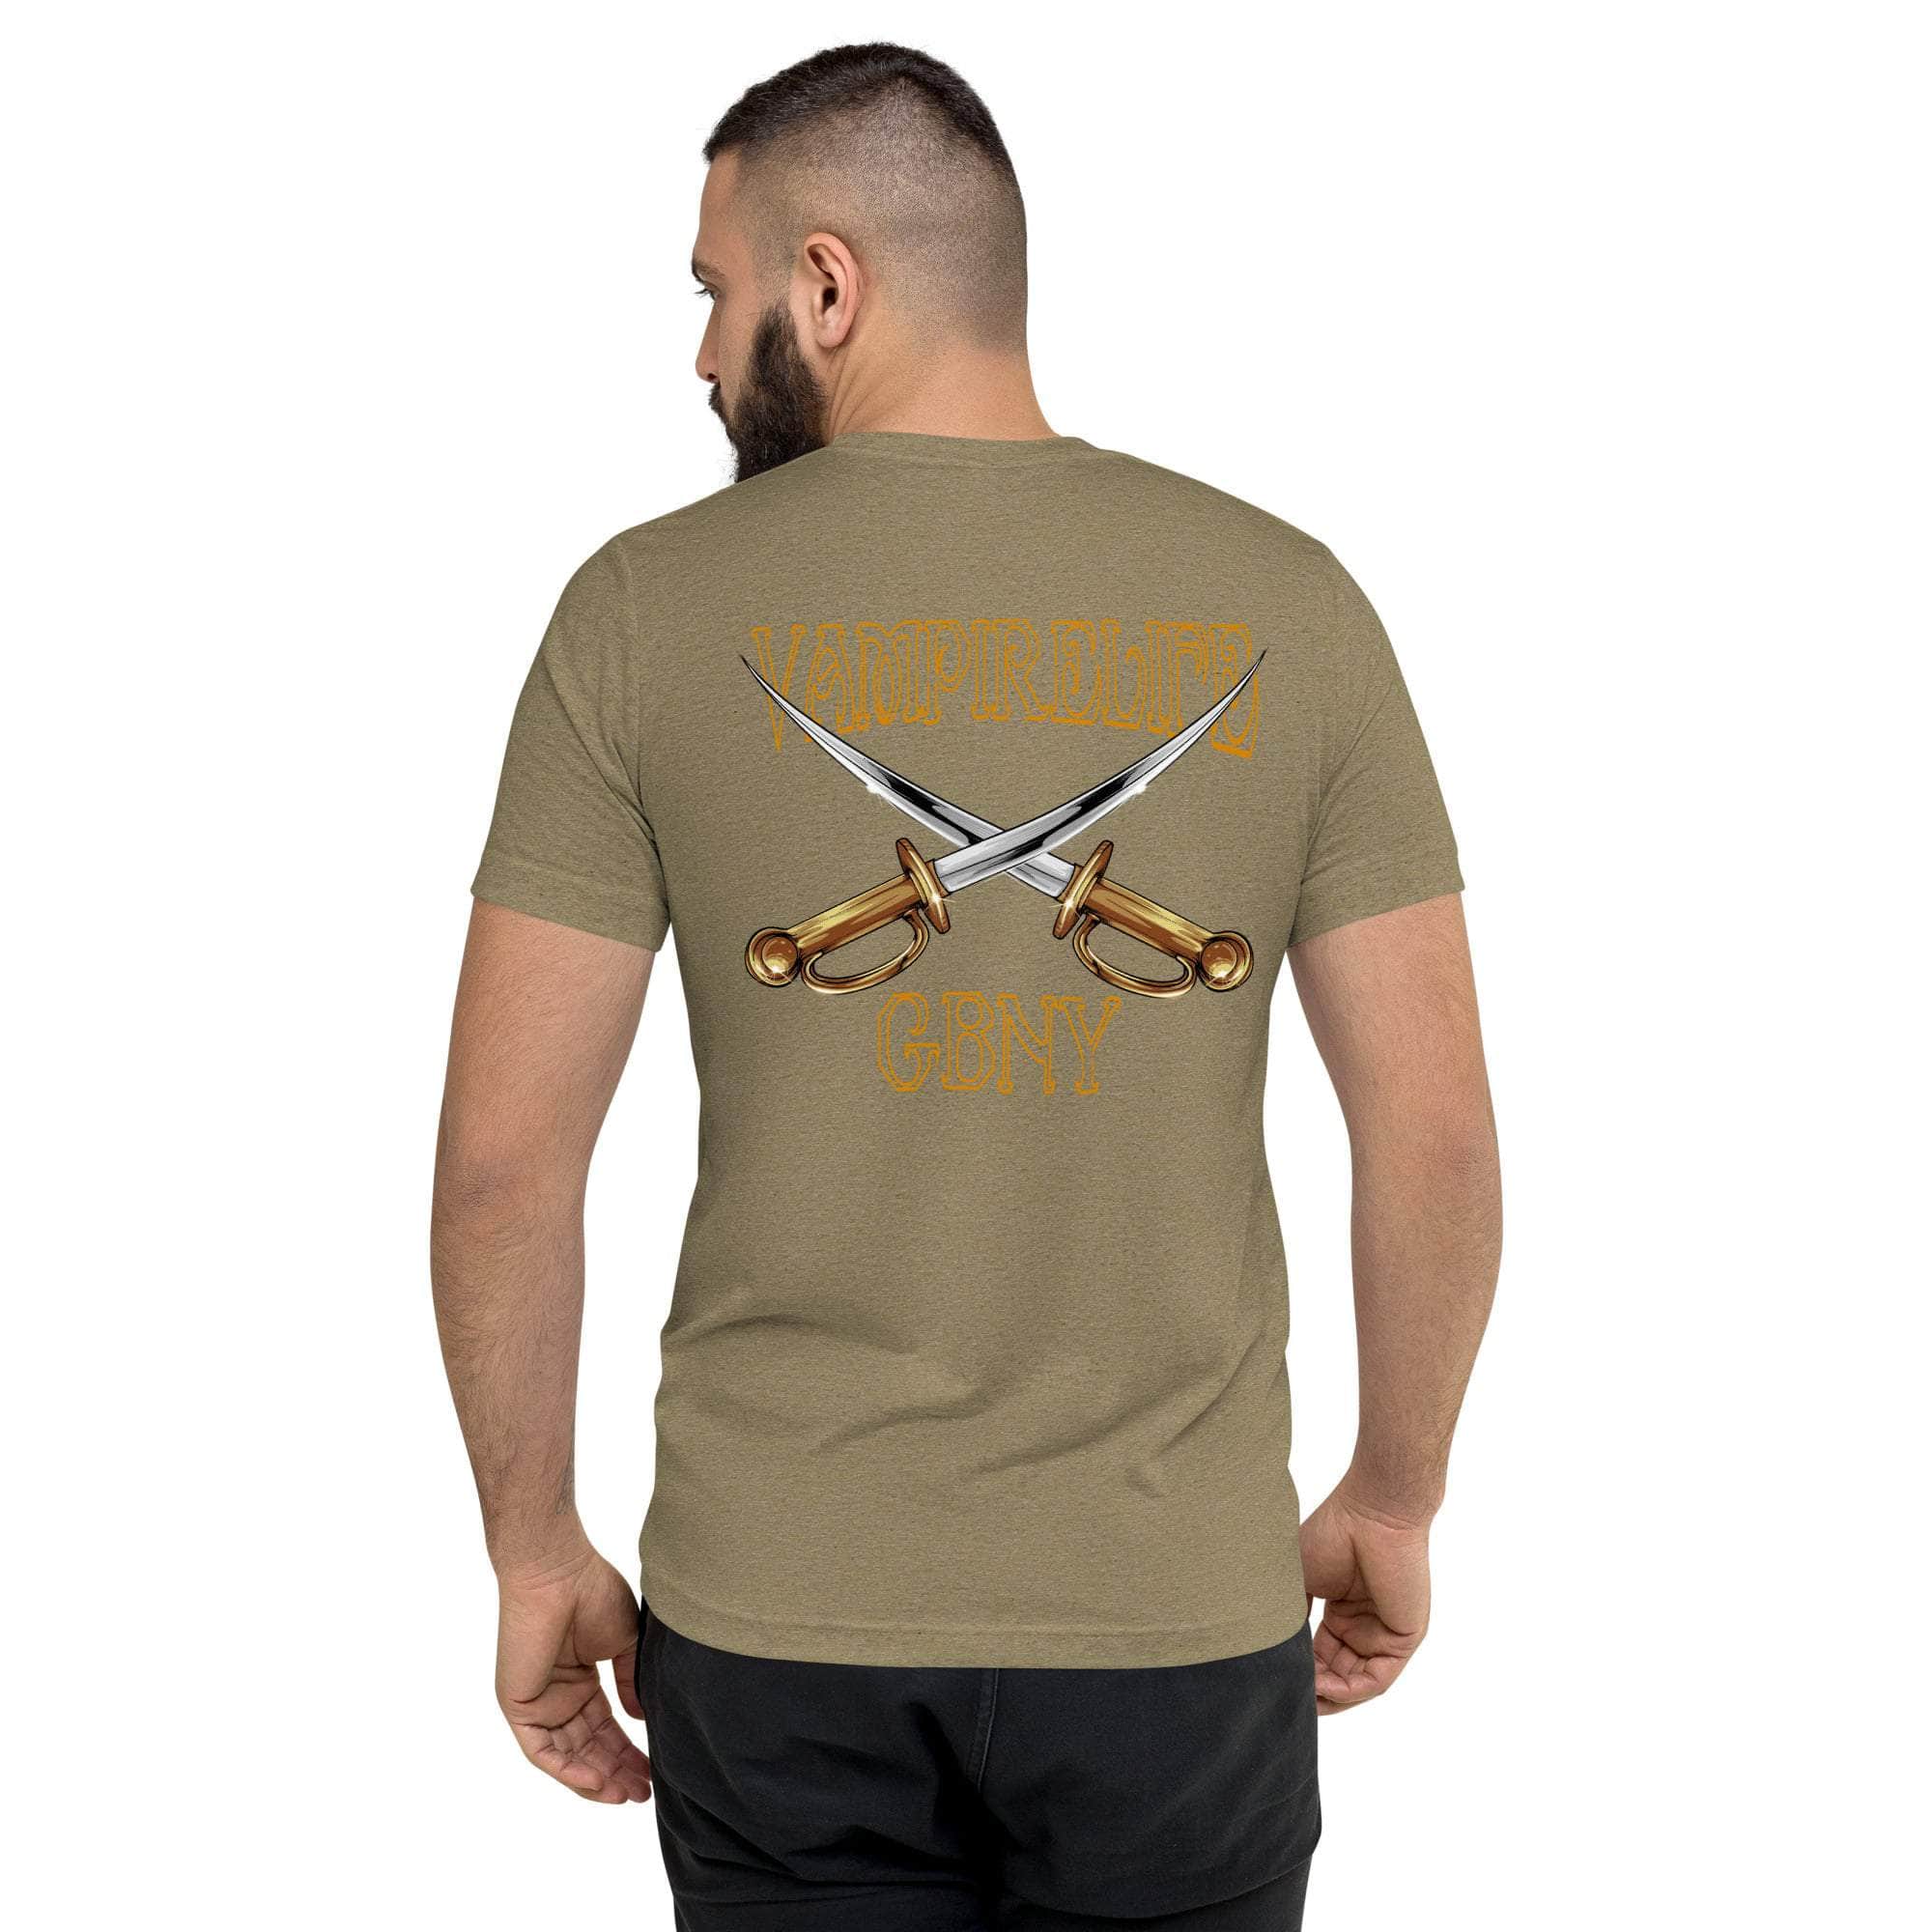 GBNY Vamp Life X GBNY "Cross Swords" T-shirt - Men's